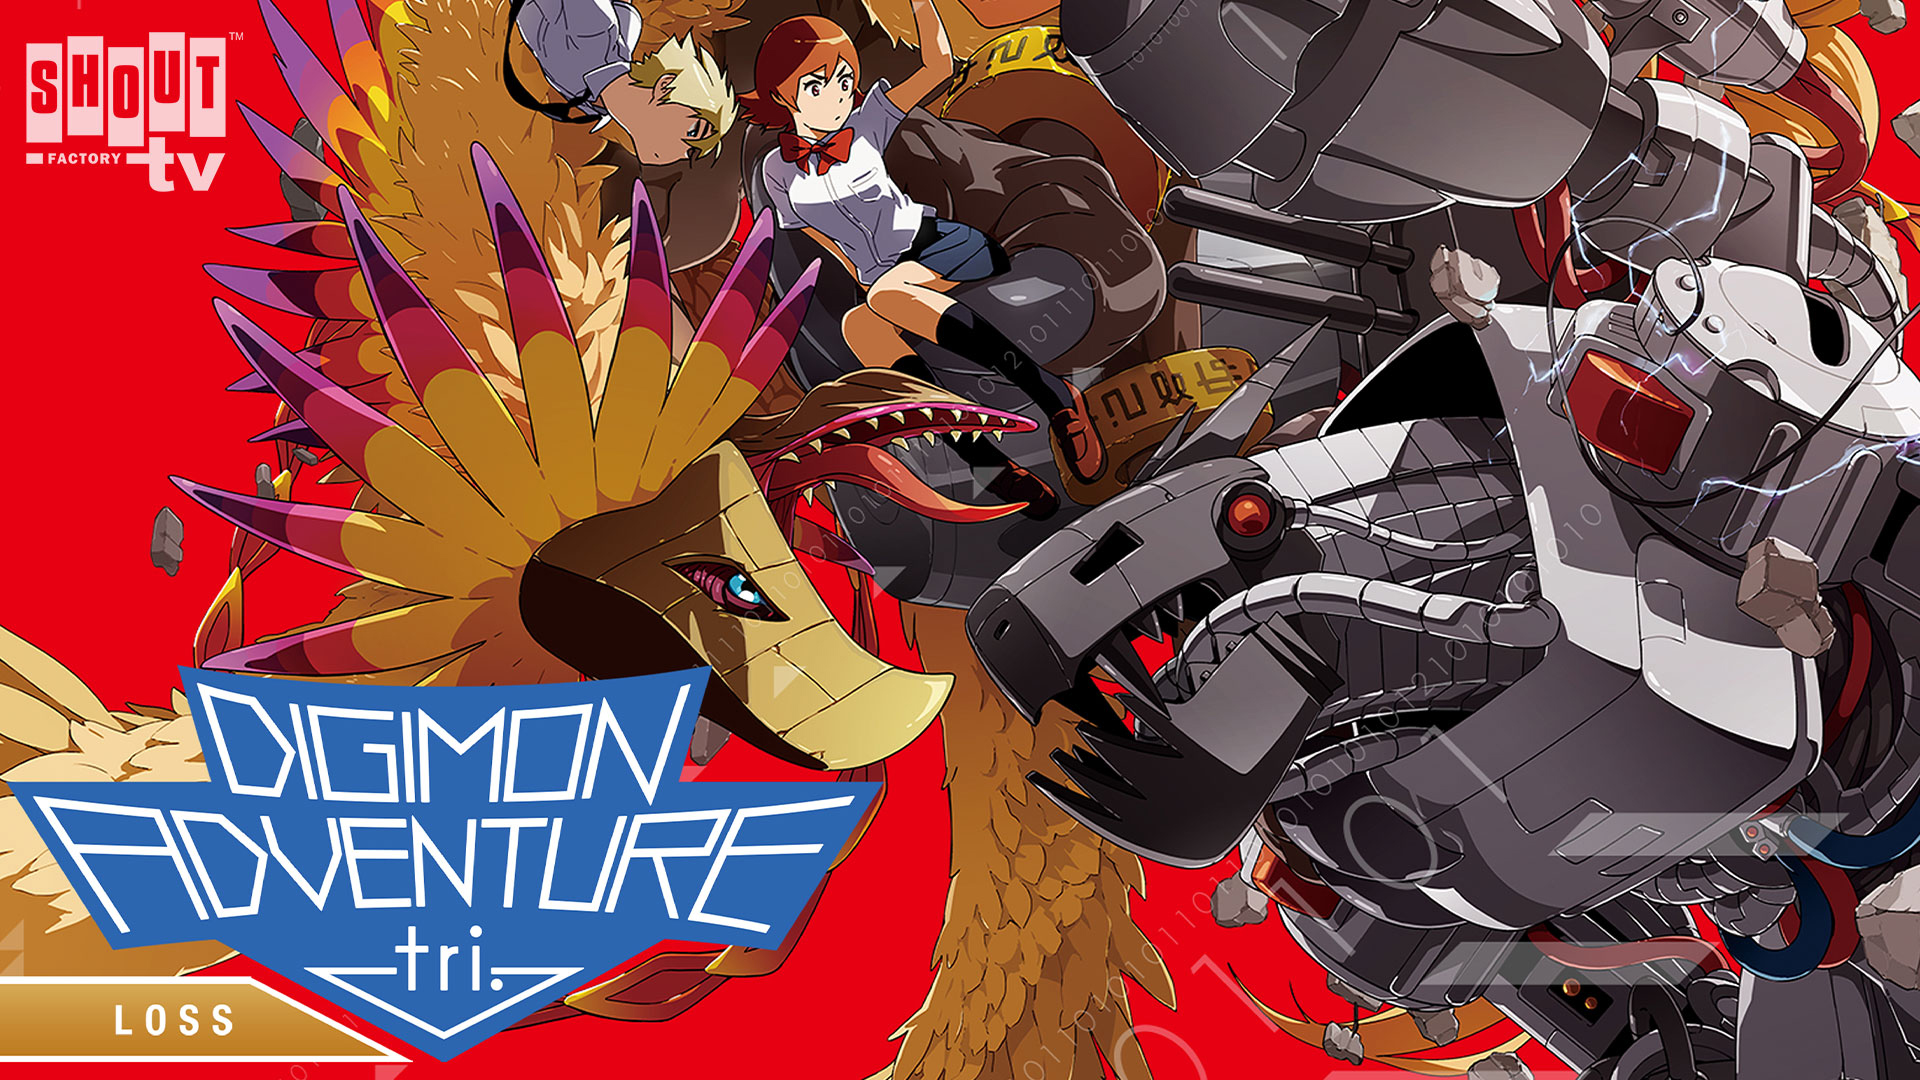 Digimon Adventure Tri.: Loss Combo